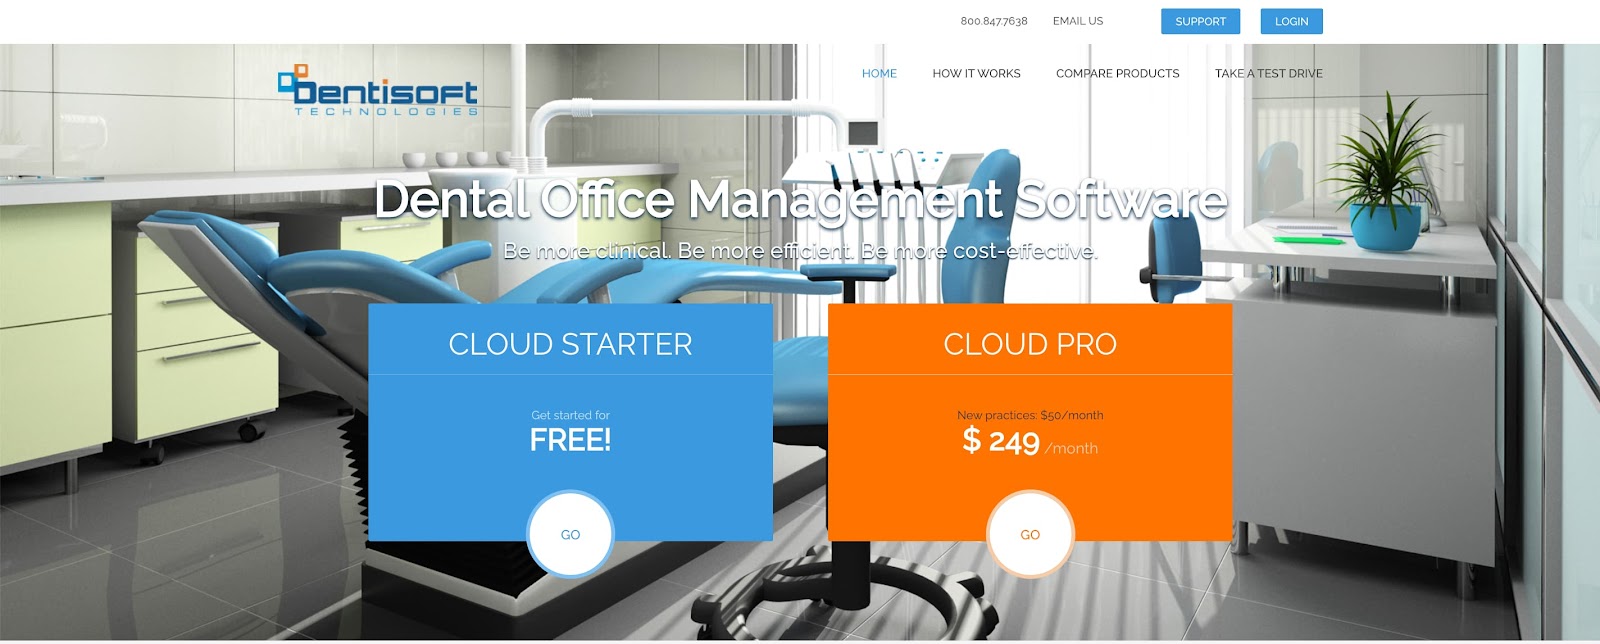 dentisoft dental office management software